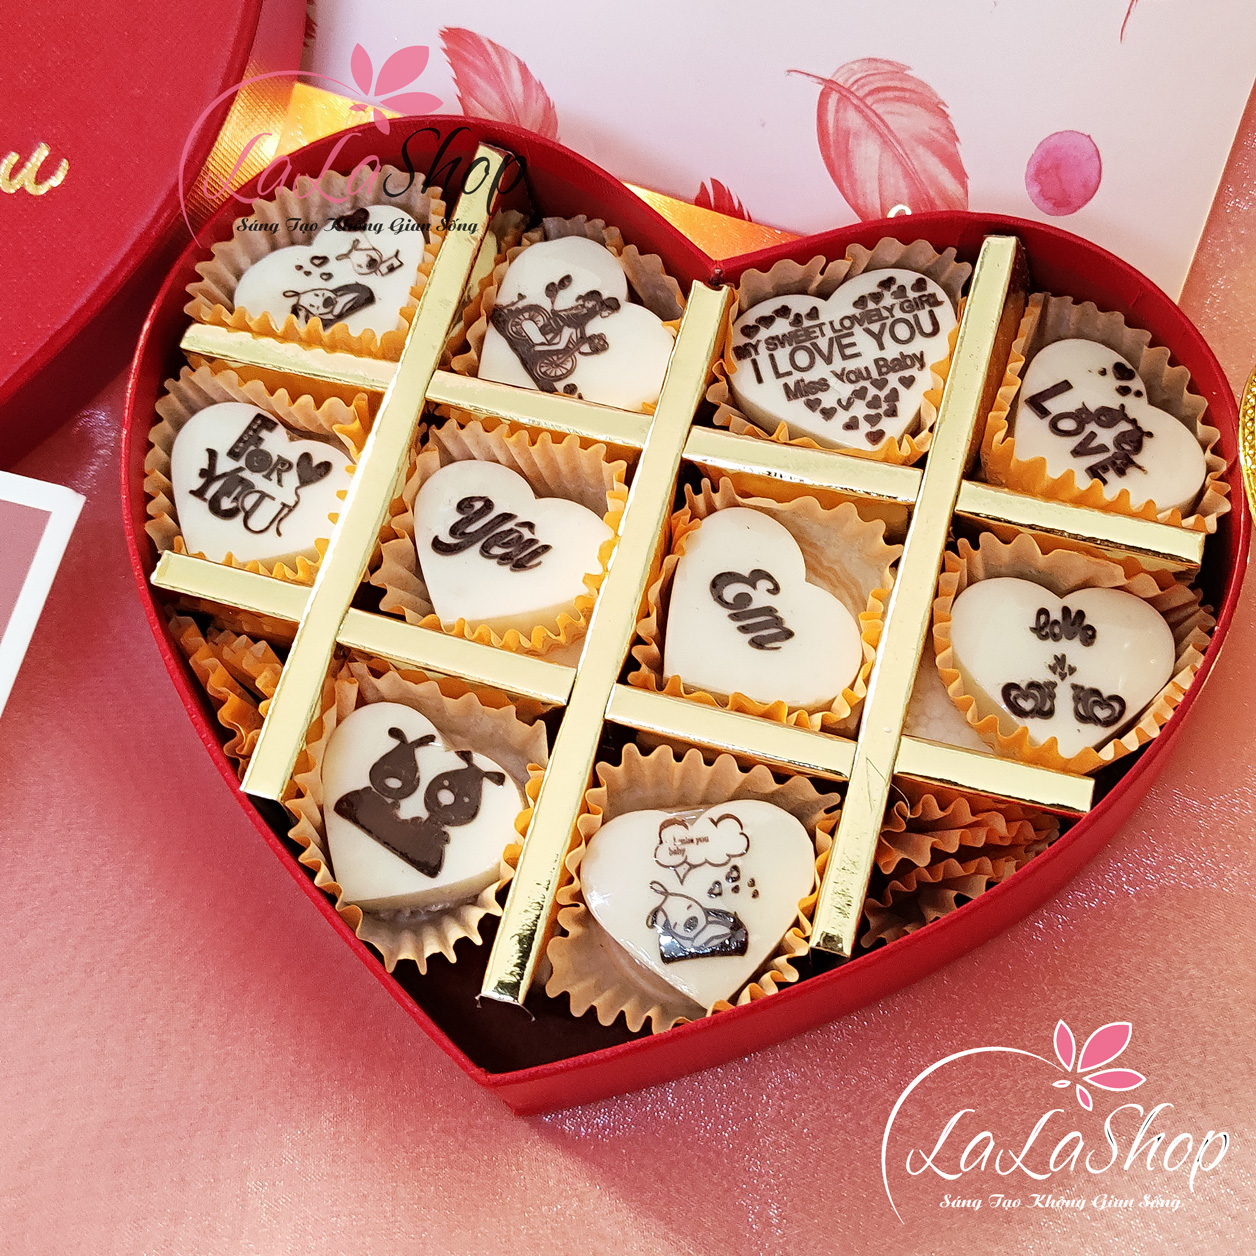 BDAY BOX  HỘP QUÀ TẶNG SINH NHẬT  PPG Chocolate Socola tươi nama quà tặng  socola quà tặng doanh nghiệp